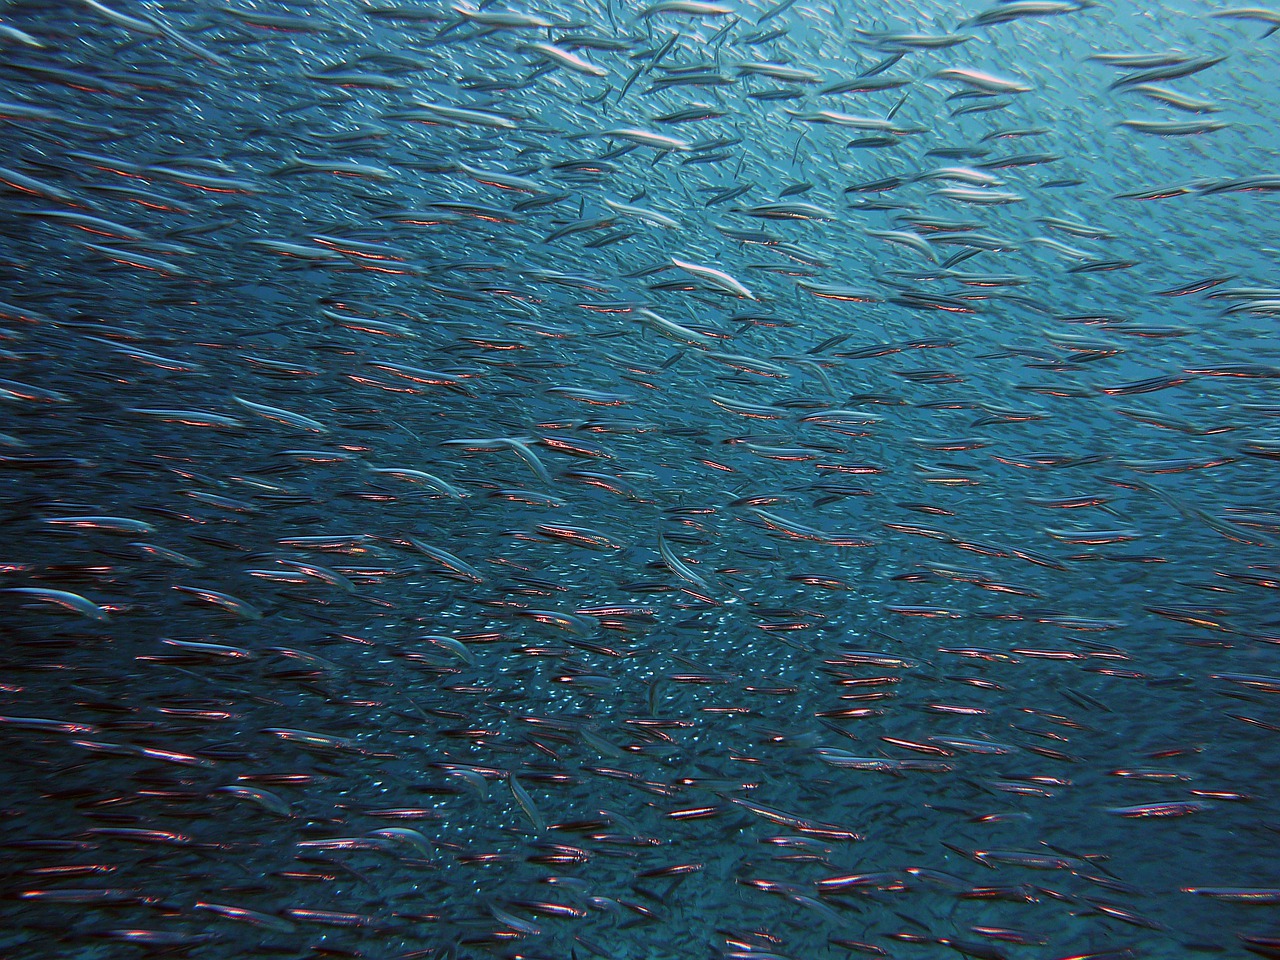 Mar Mediterraneo, invasioni di nuovi pesci a causa del clima